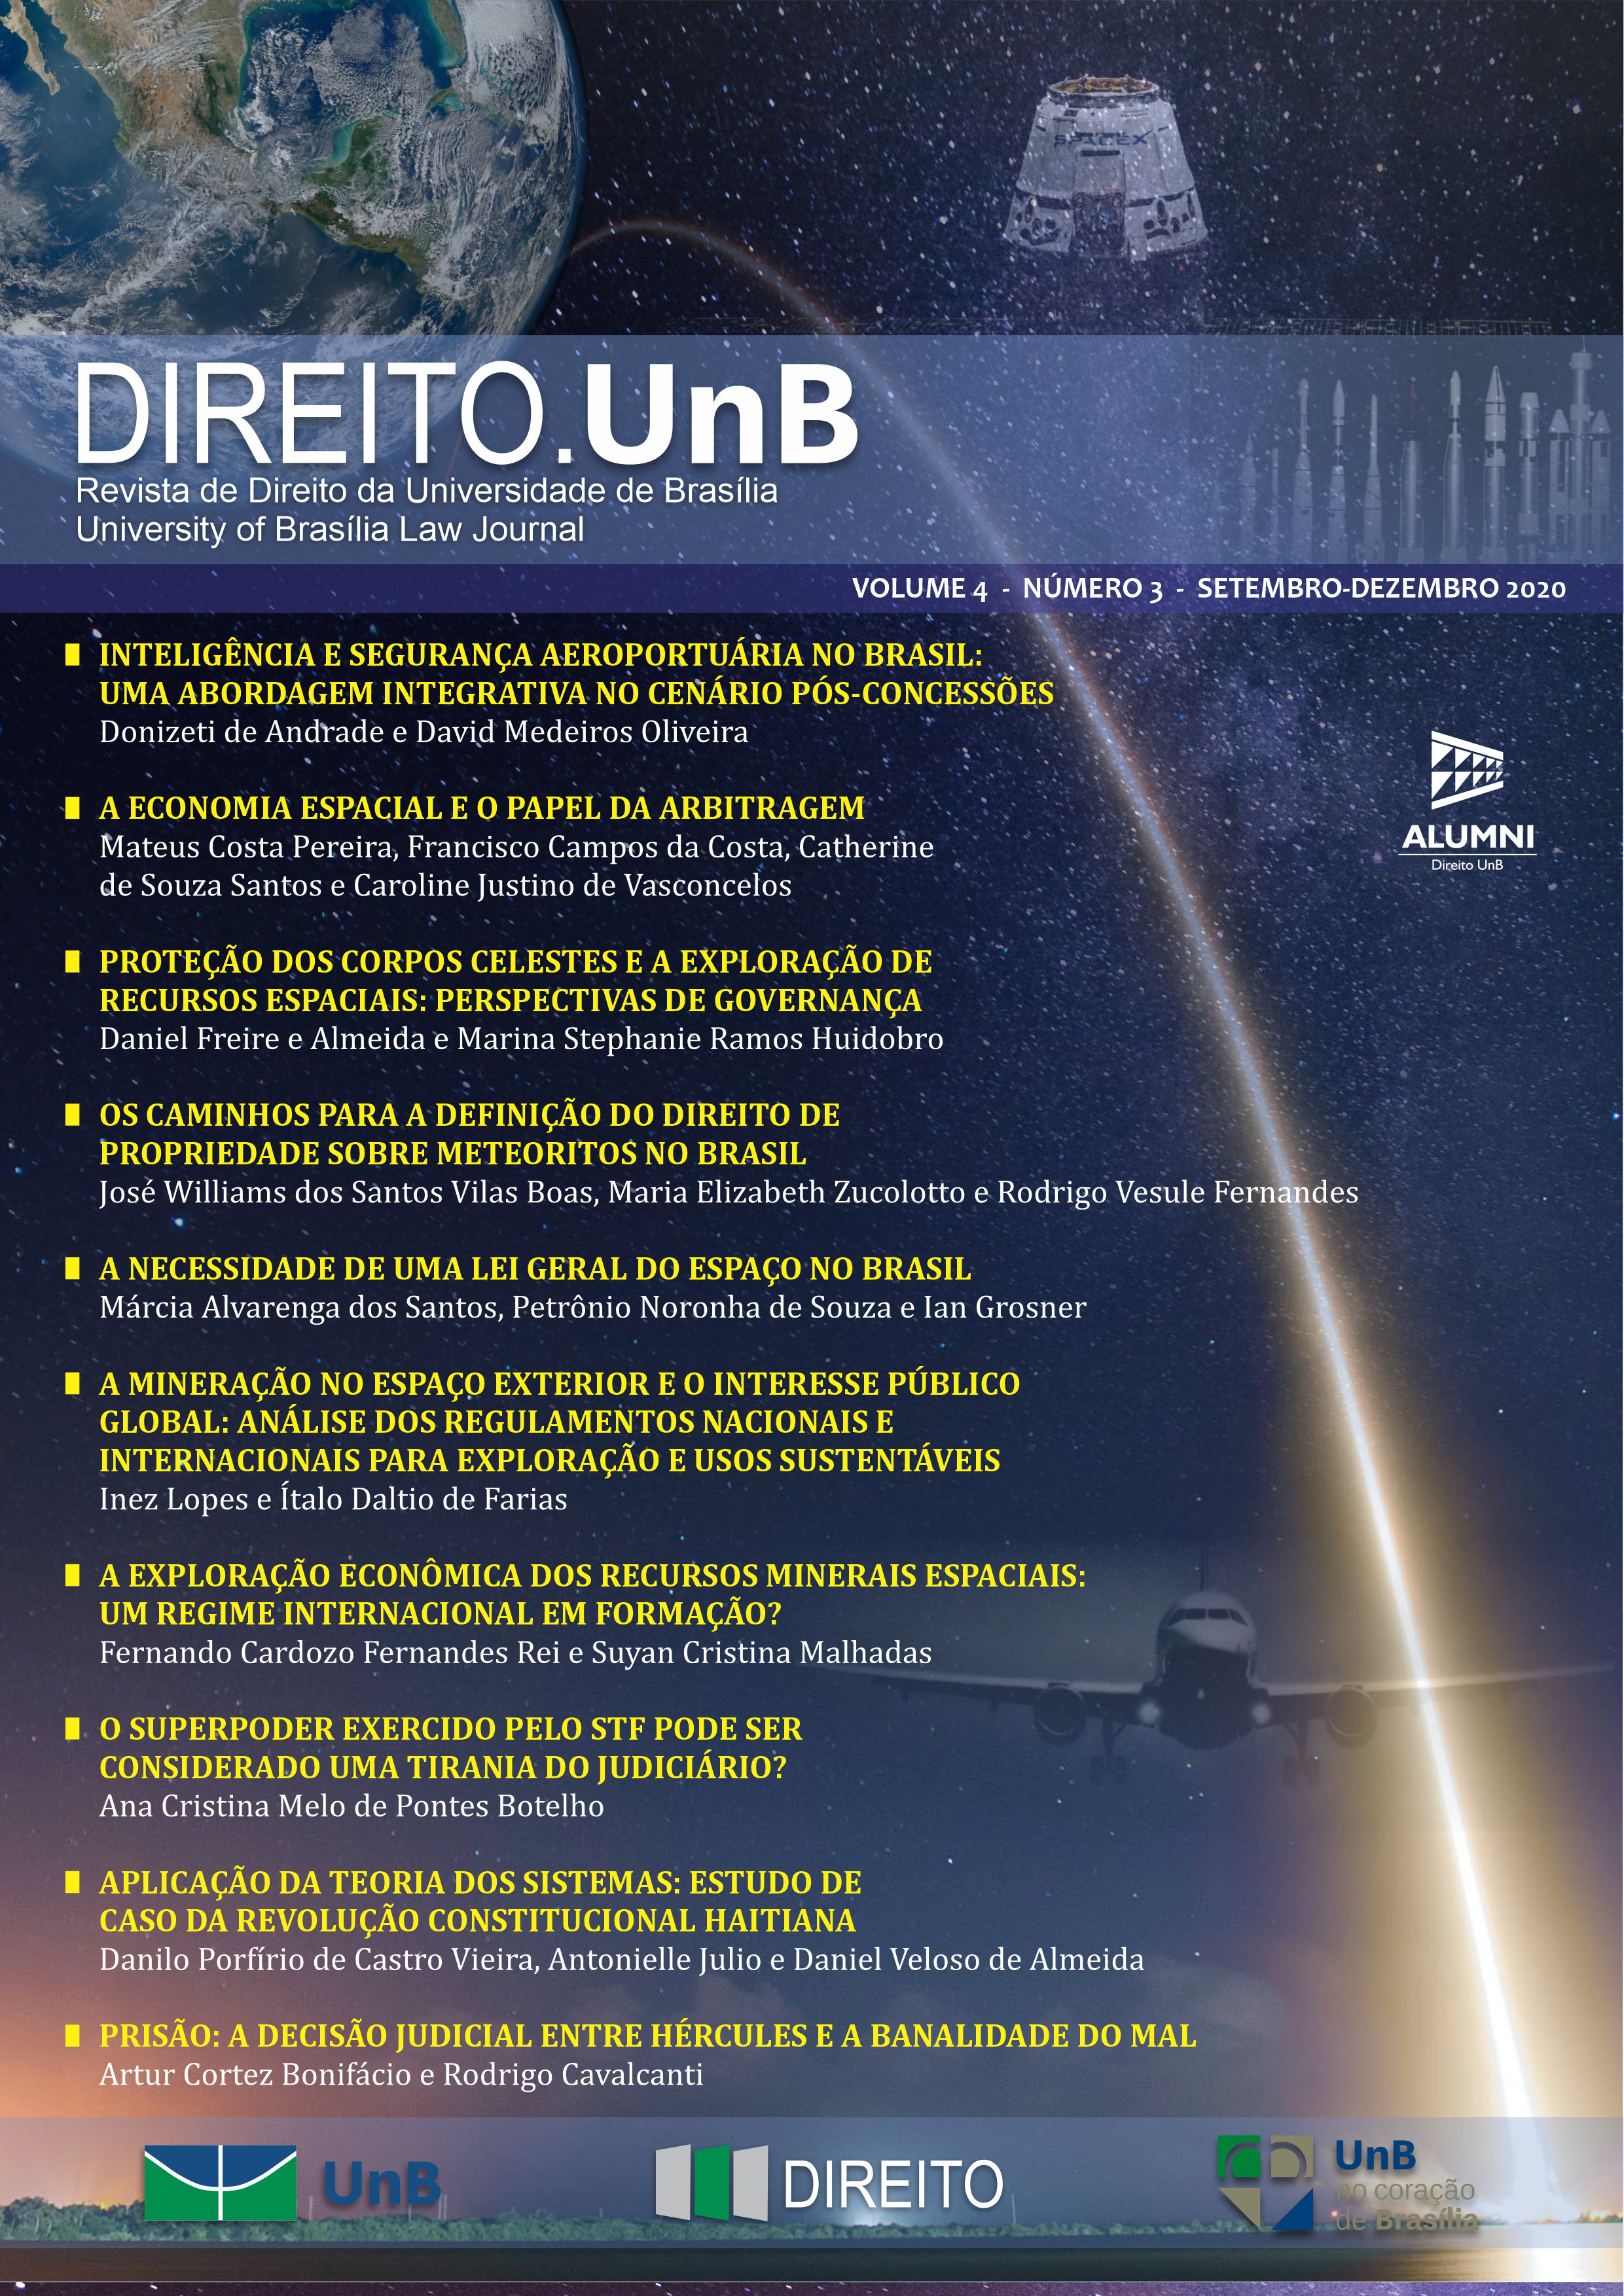 Capa da Revista Direito.UnB Volume 4, Número 3 - Edição Especial - Aviação Civil e Direito Espacial: aspectos regulatórios nacionais e internacionais